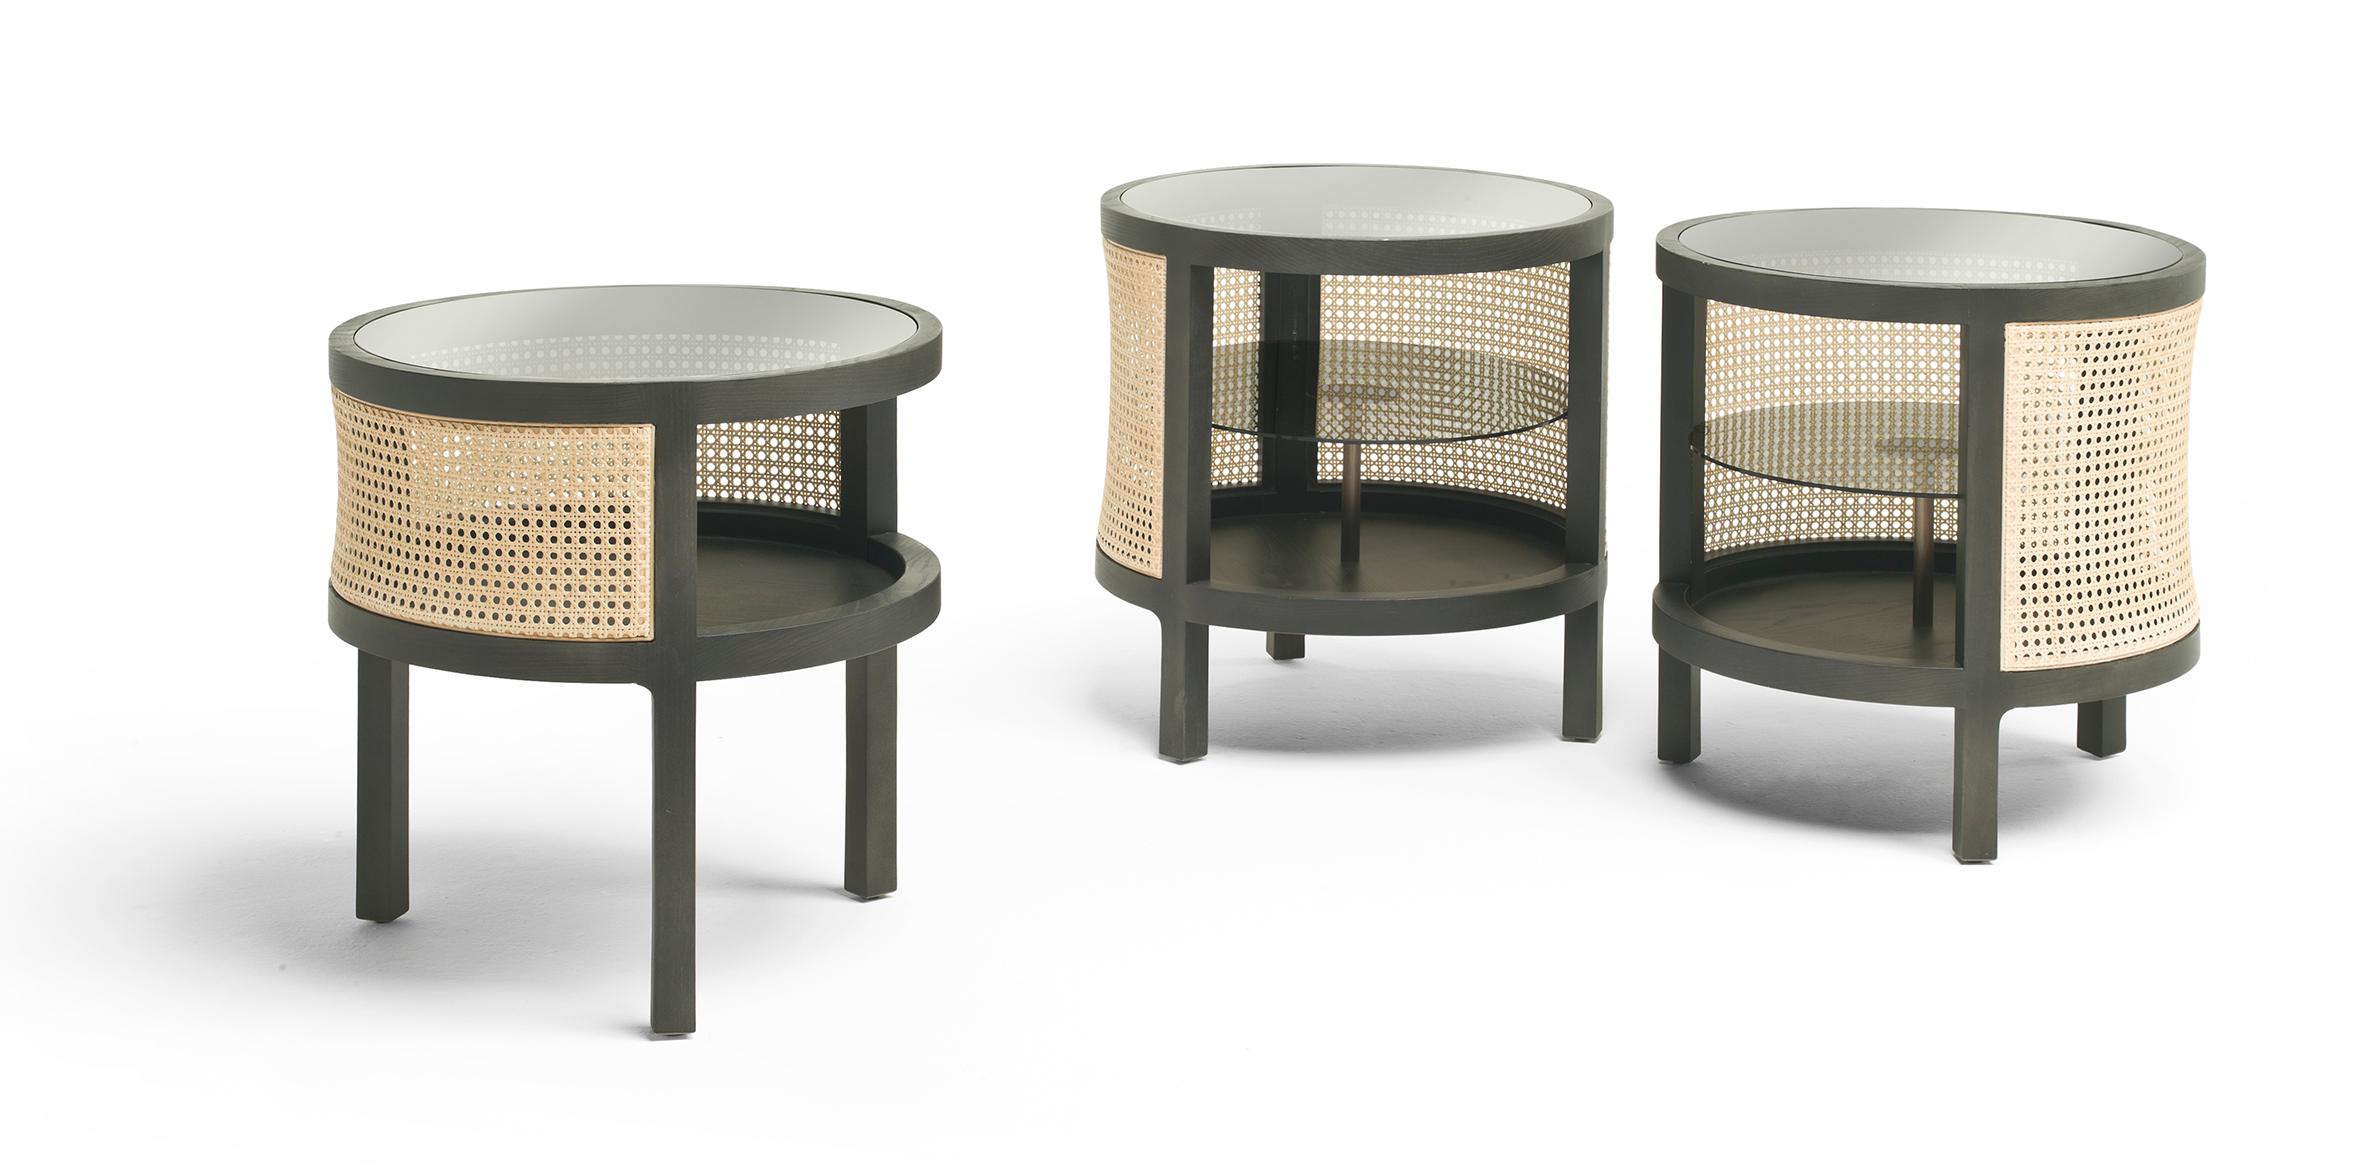 Voici la table ronde Sacher, une création délectable conçue par Leonardo Dainelli de Dainelli Studio - un véritable témoignage du savoir-faire italien de Fratelli Boffi qui ajoute une touche de fantaisie à votre espace. Cette table artisanale